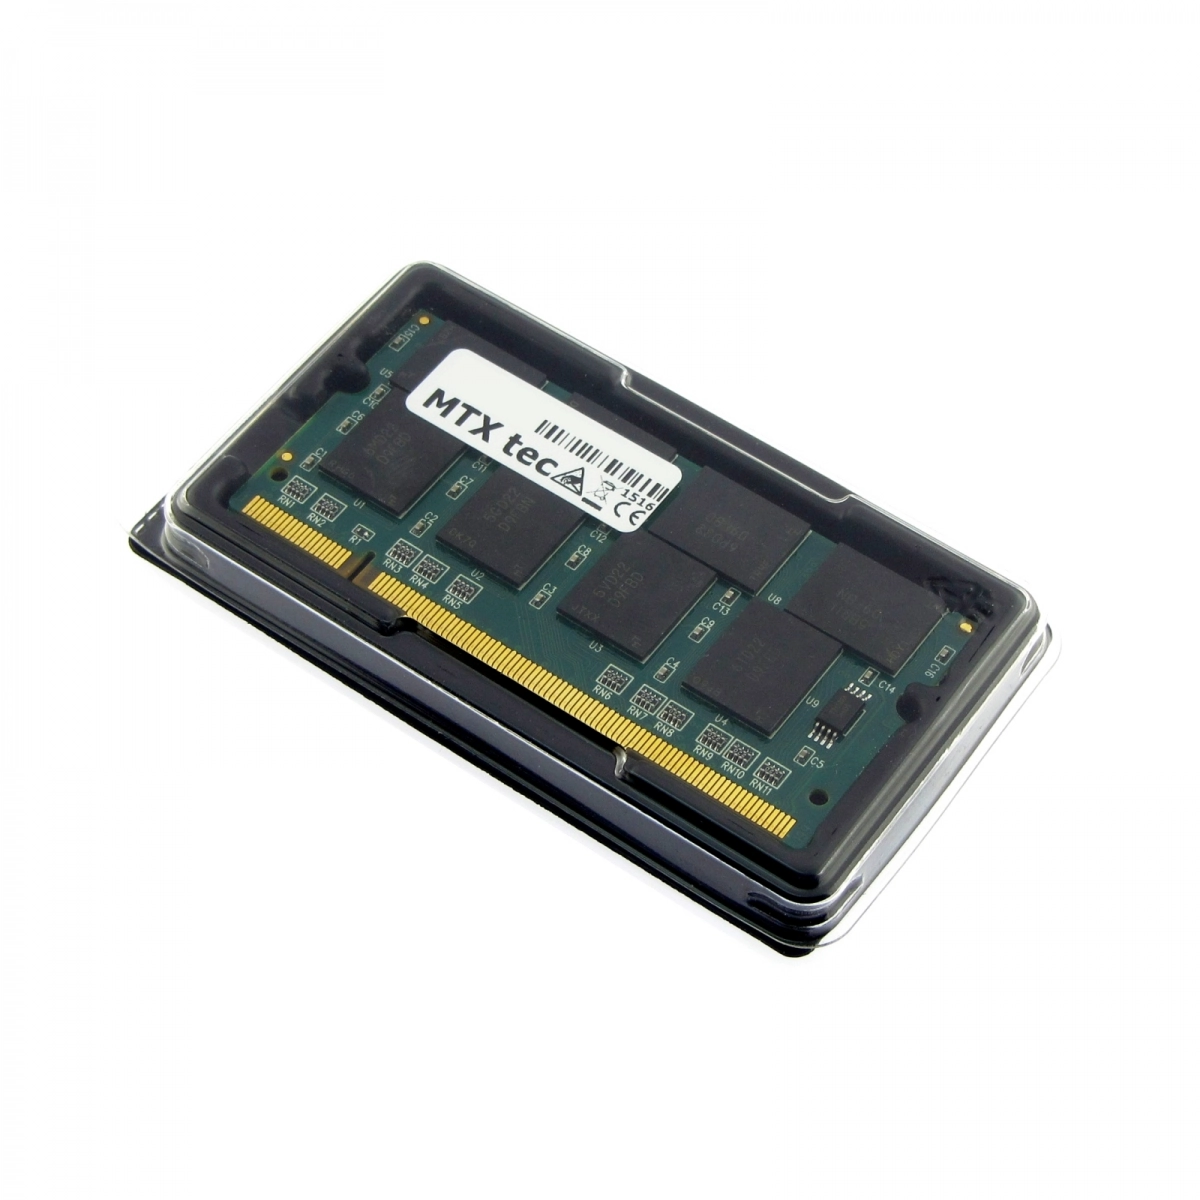 MTXtec Arbeitsspeicher 1 GB RAM für DELL Inspiron 500m (Benz Lite)